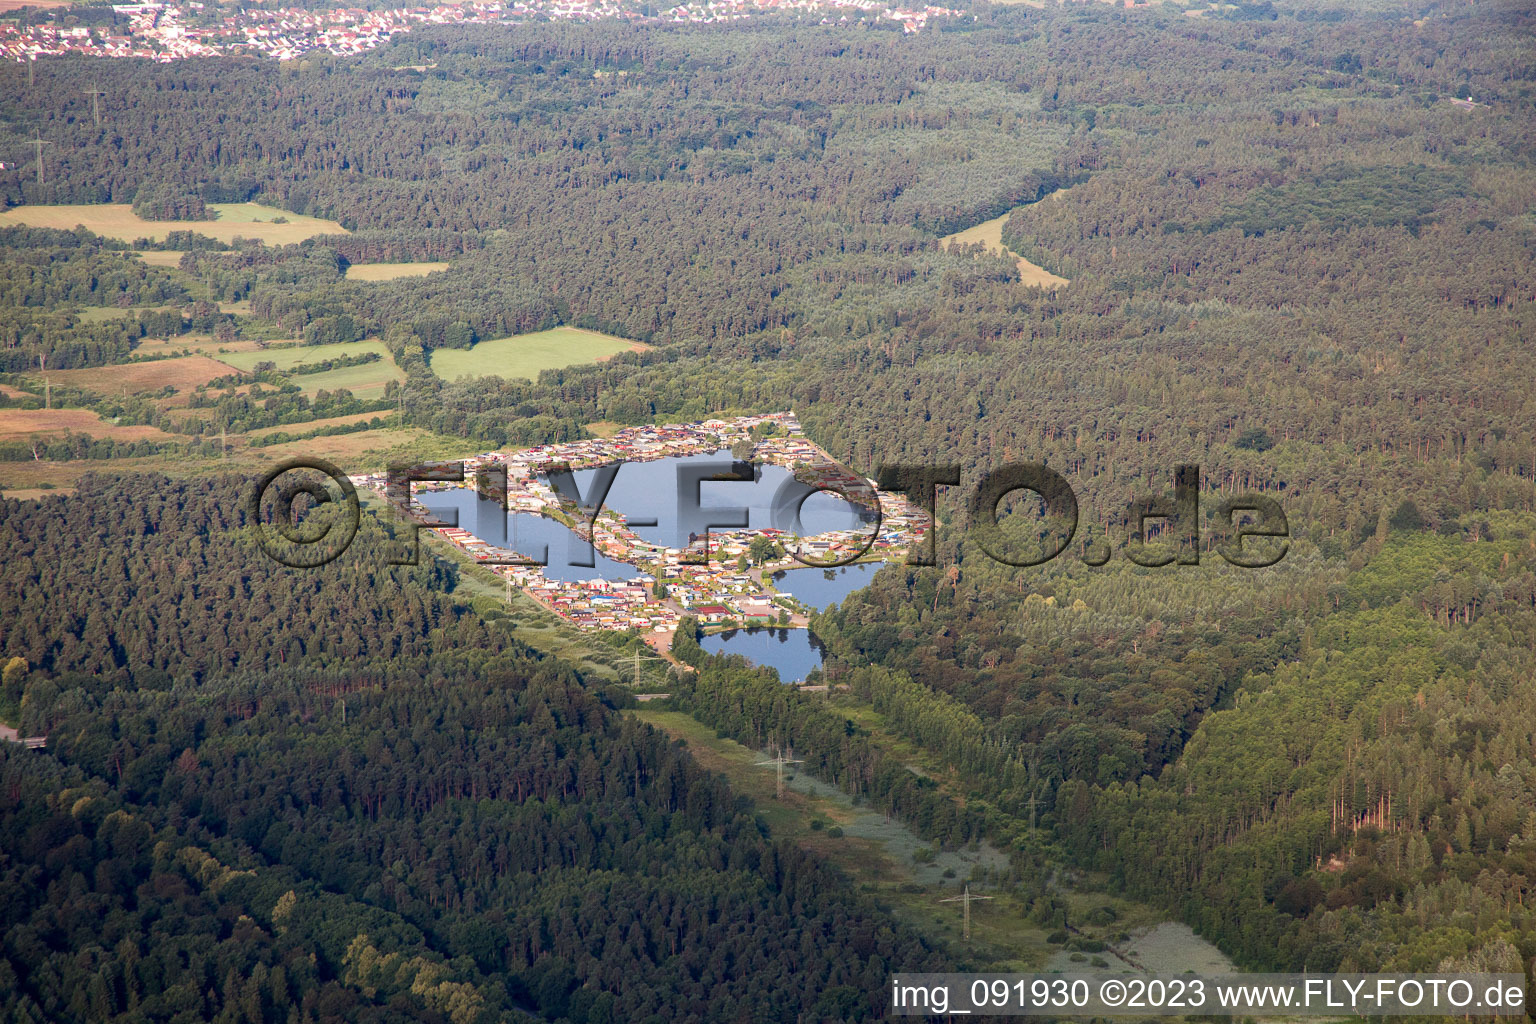 Vue aérienne de Camping Königsbruch à Homburg dans le département Sarre, Allemagne